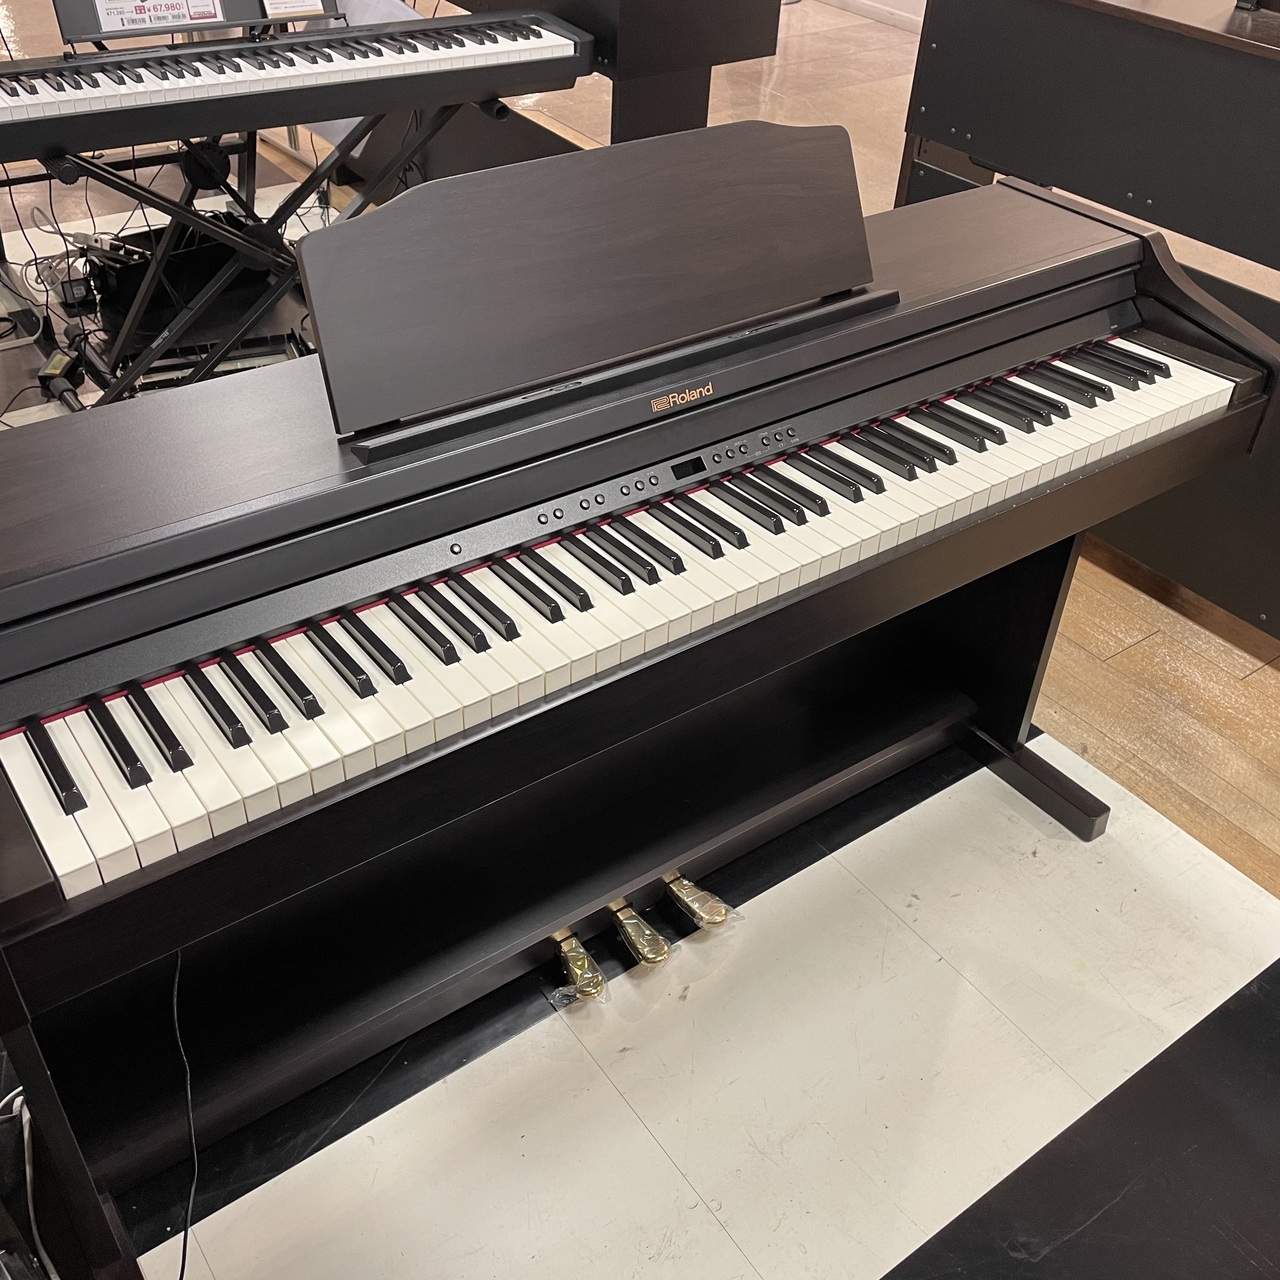 ローランド 電子ピアノ RP501R - 鍵盤楽器、ピアノ